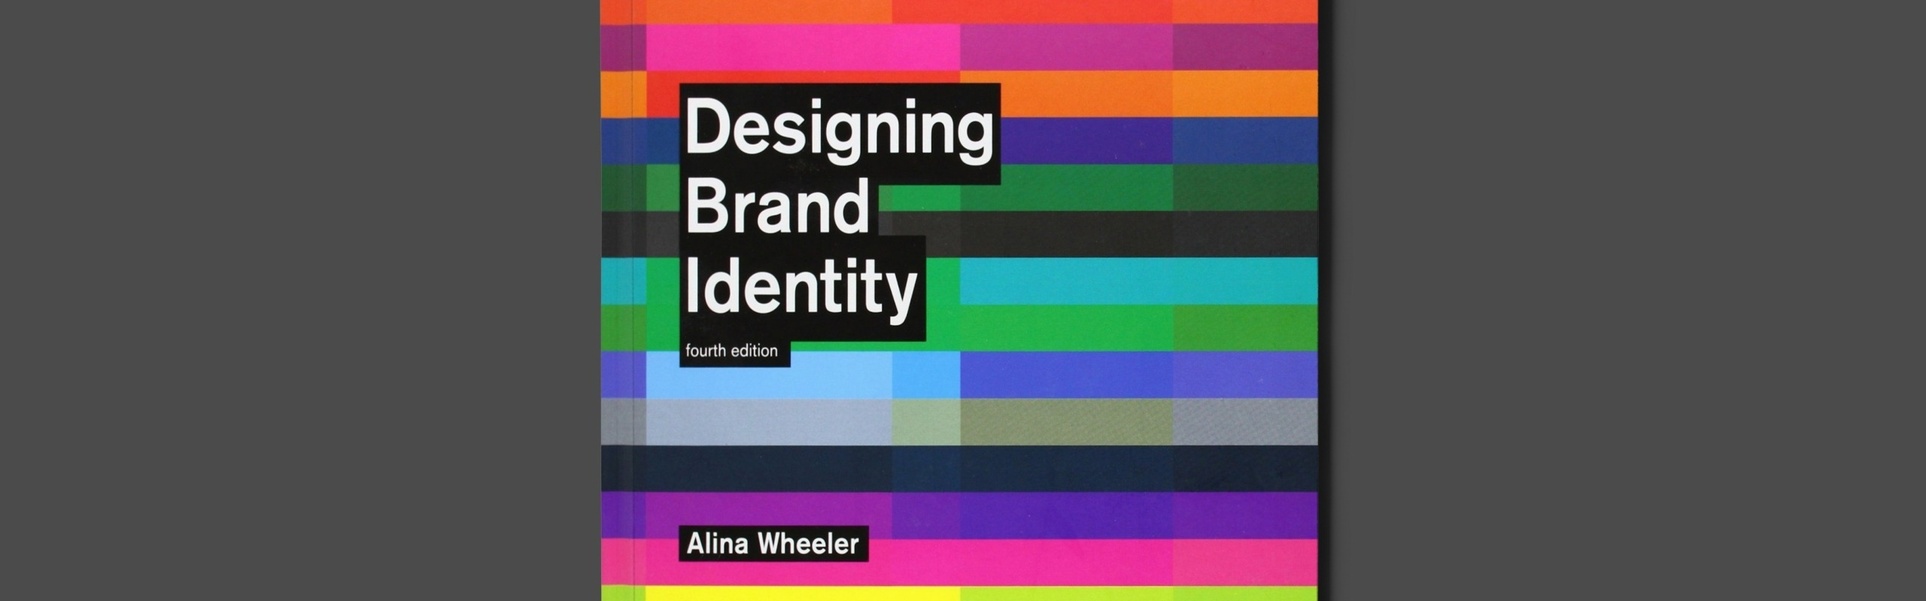 Diseño de identidad de marca: una guía esencial para todo el equipo de marca